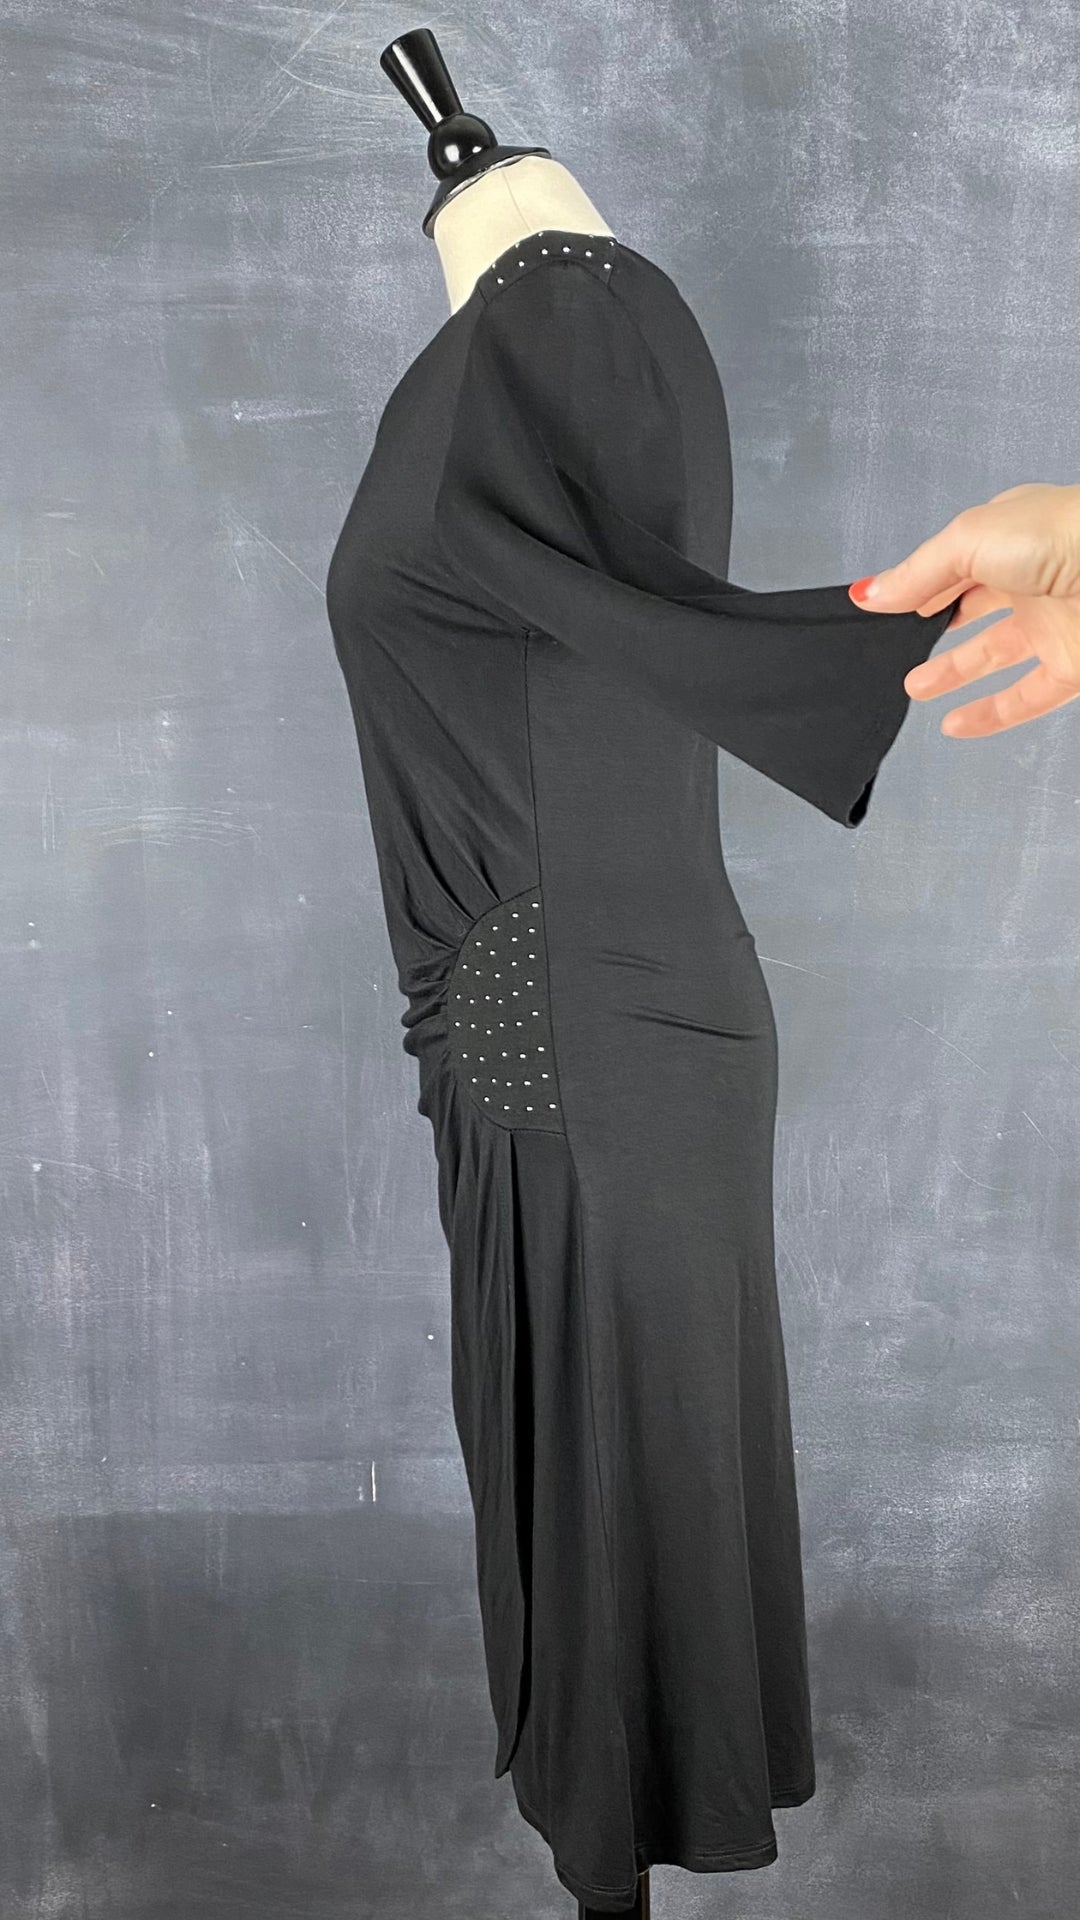 Robe noire drapée La Fée Maraboutée, taille s-m. Vue de côté, manche relevée.